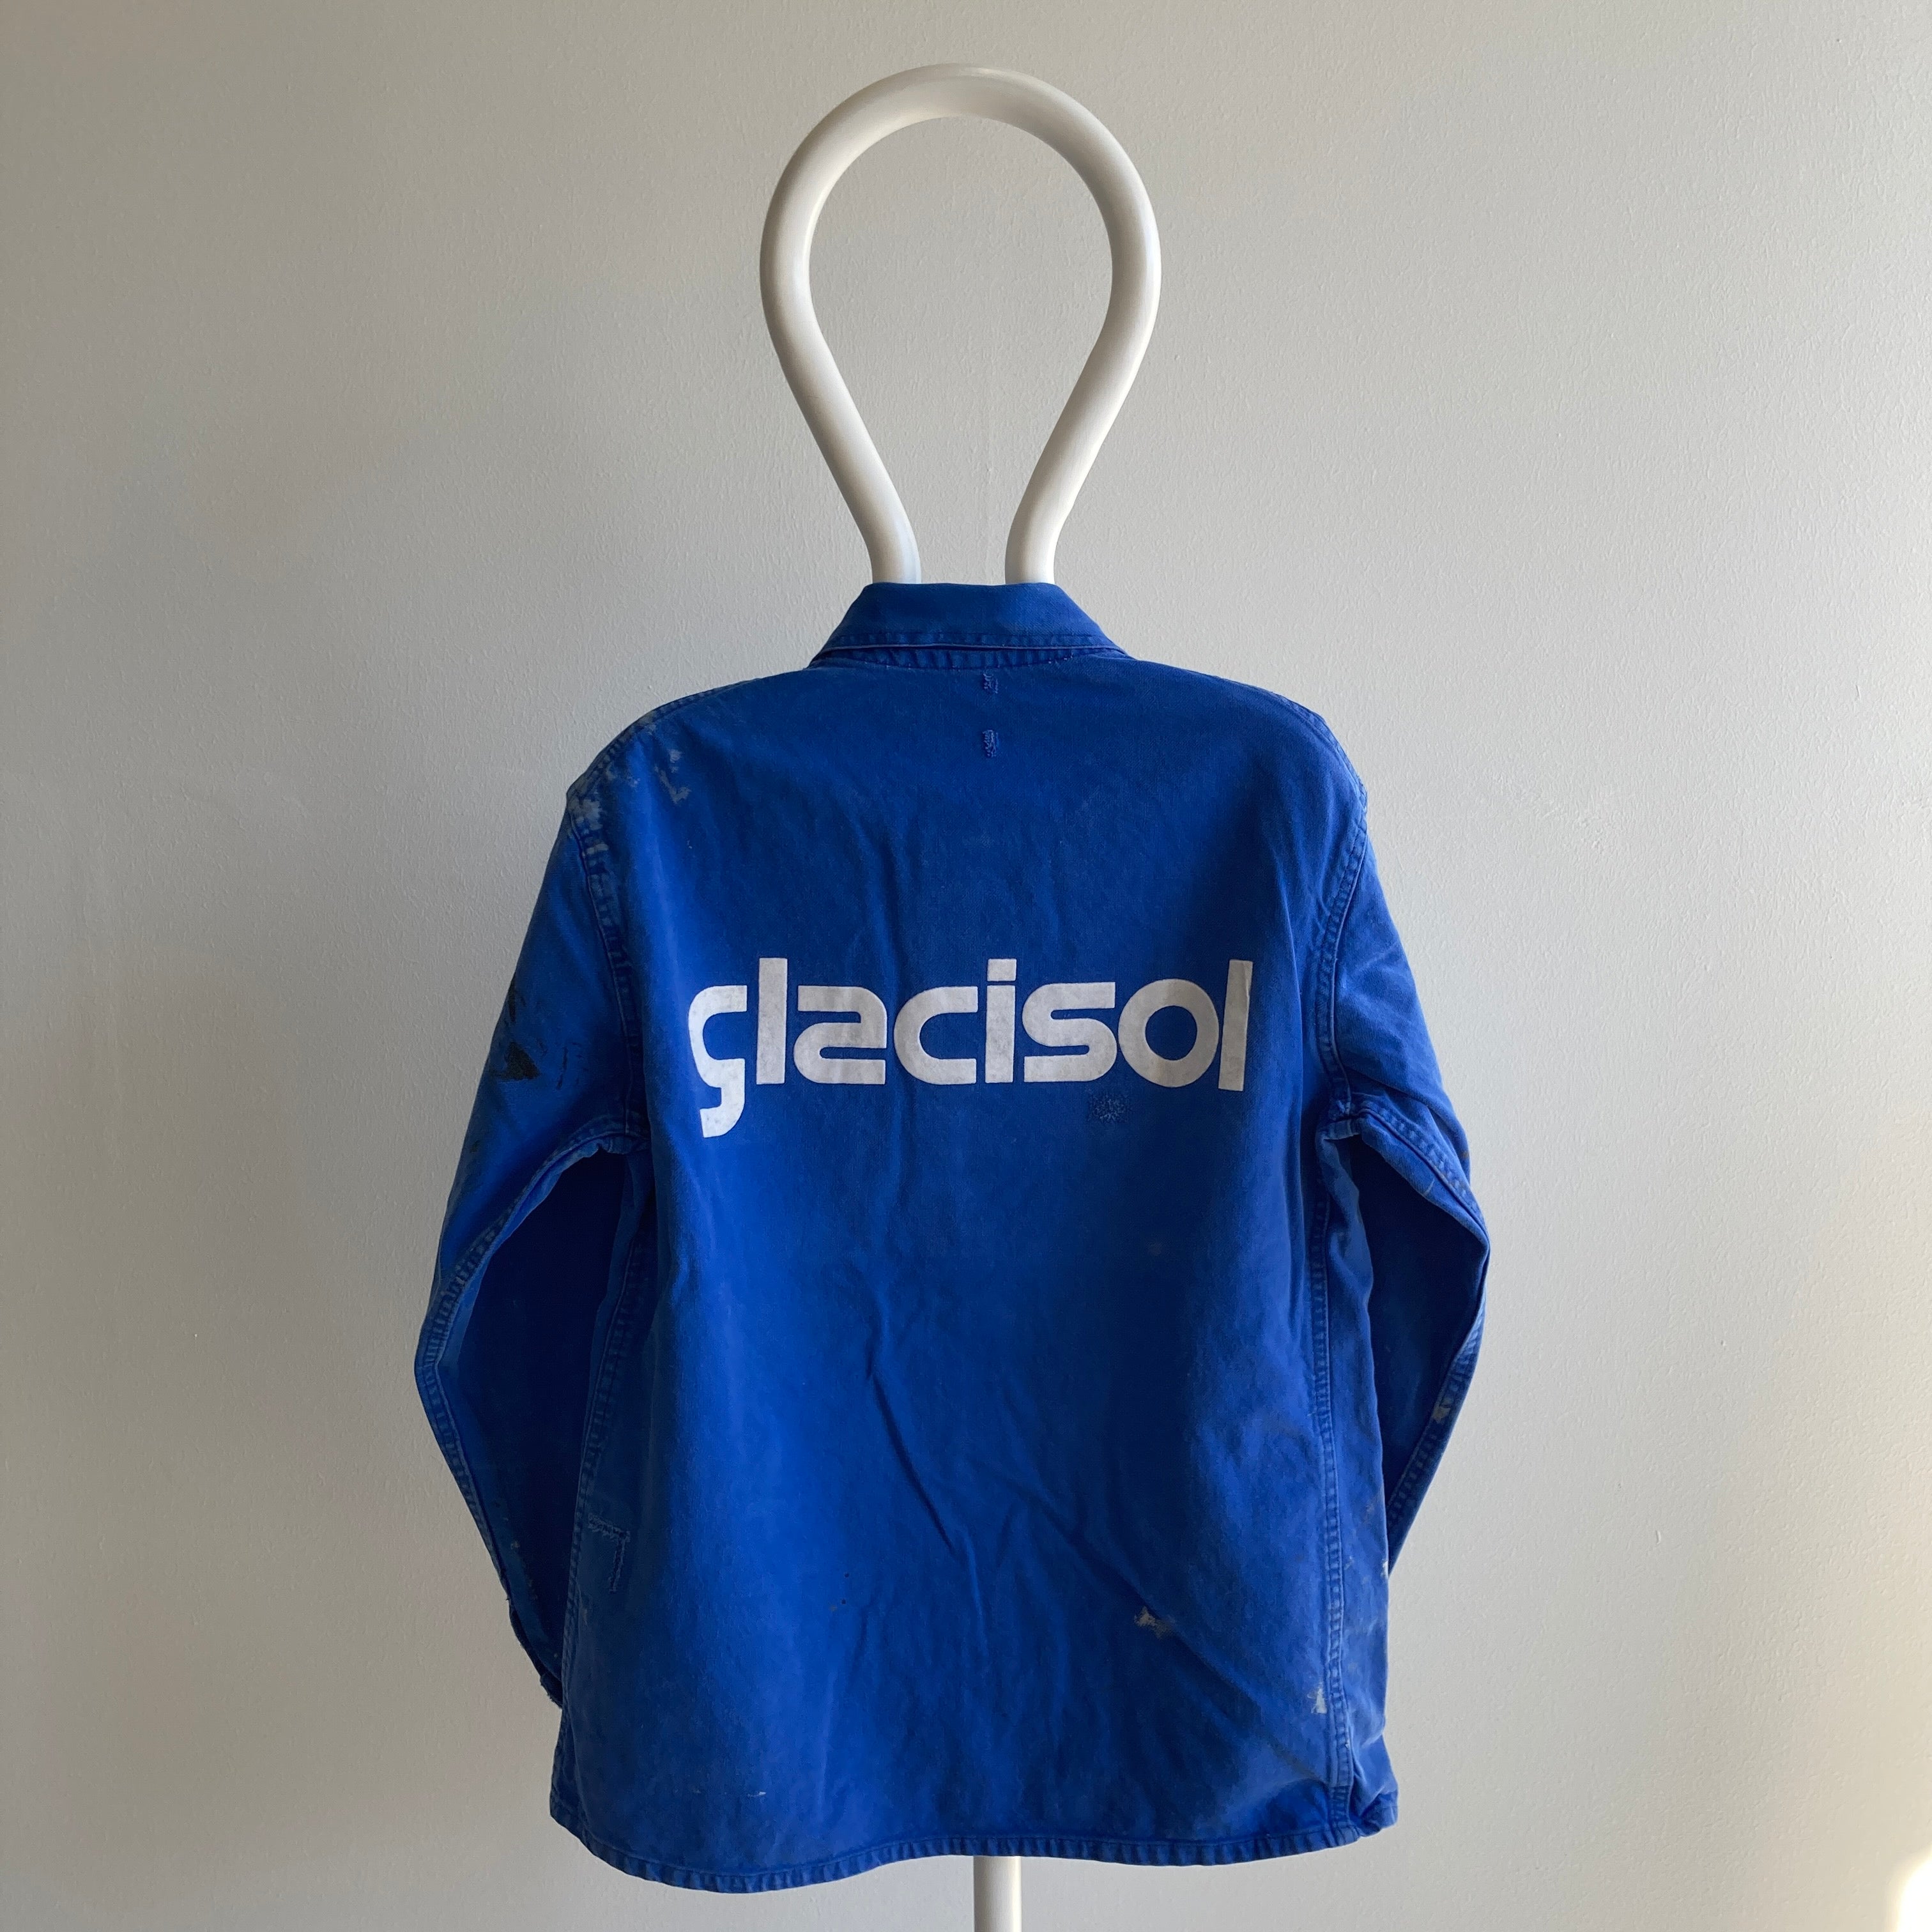 Manteau de corvée européen Glacisol des années 1980 - teinté et réparé